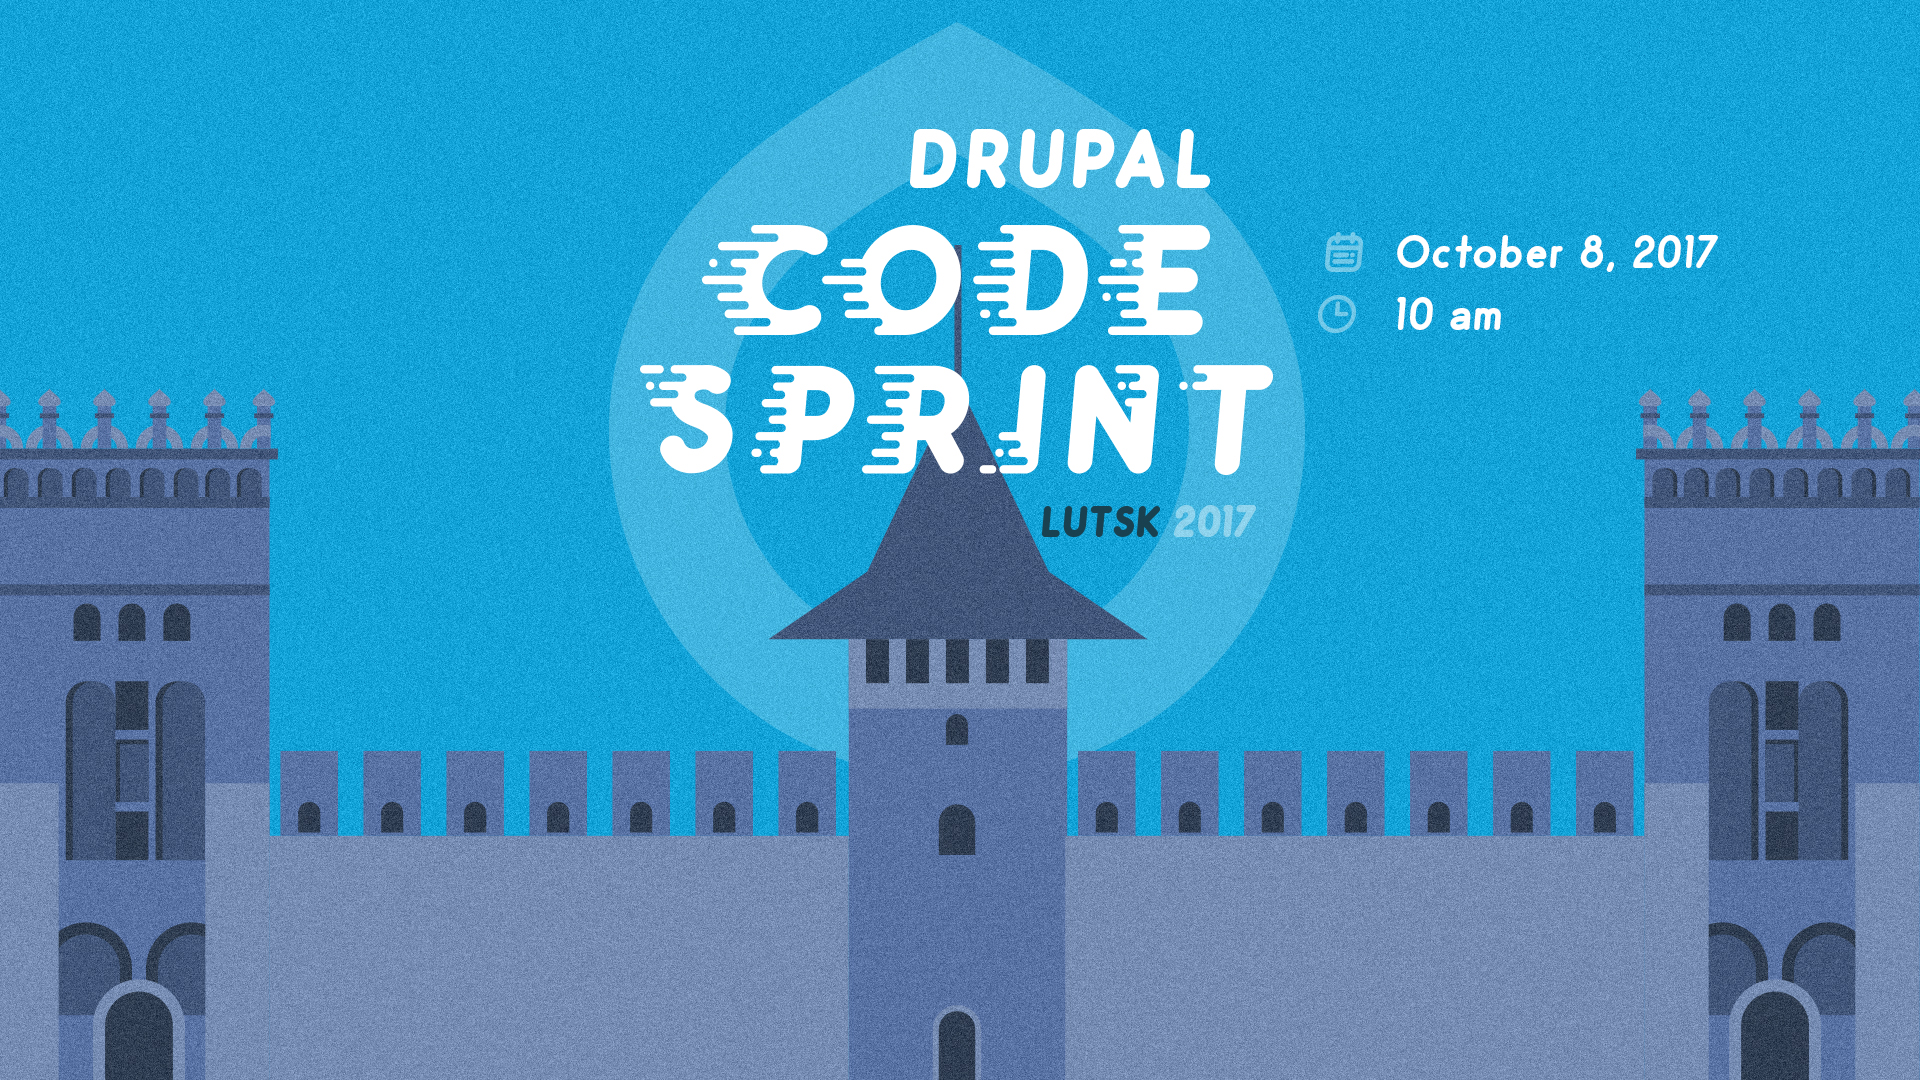 Drupal Code Sprint Lutsk 2017